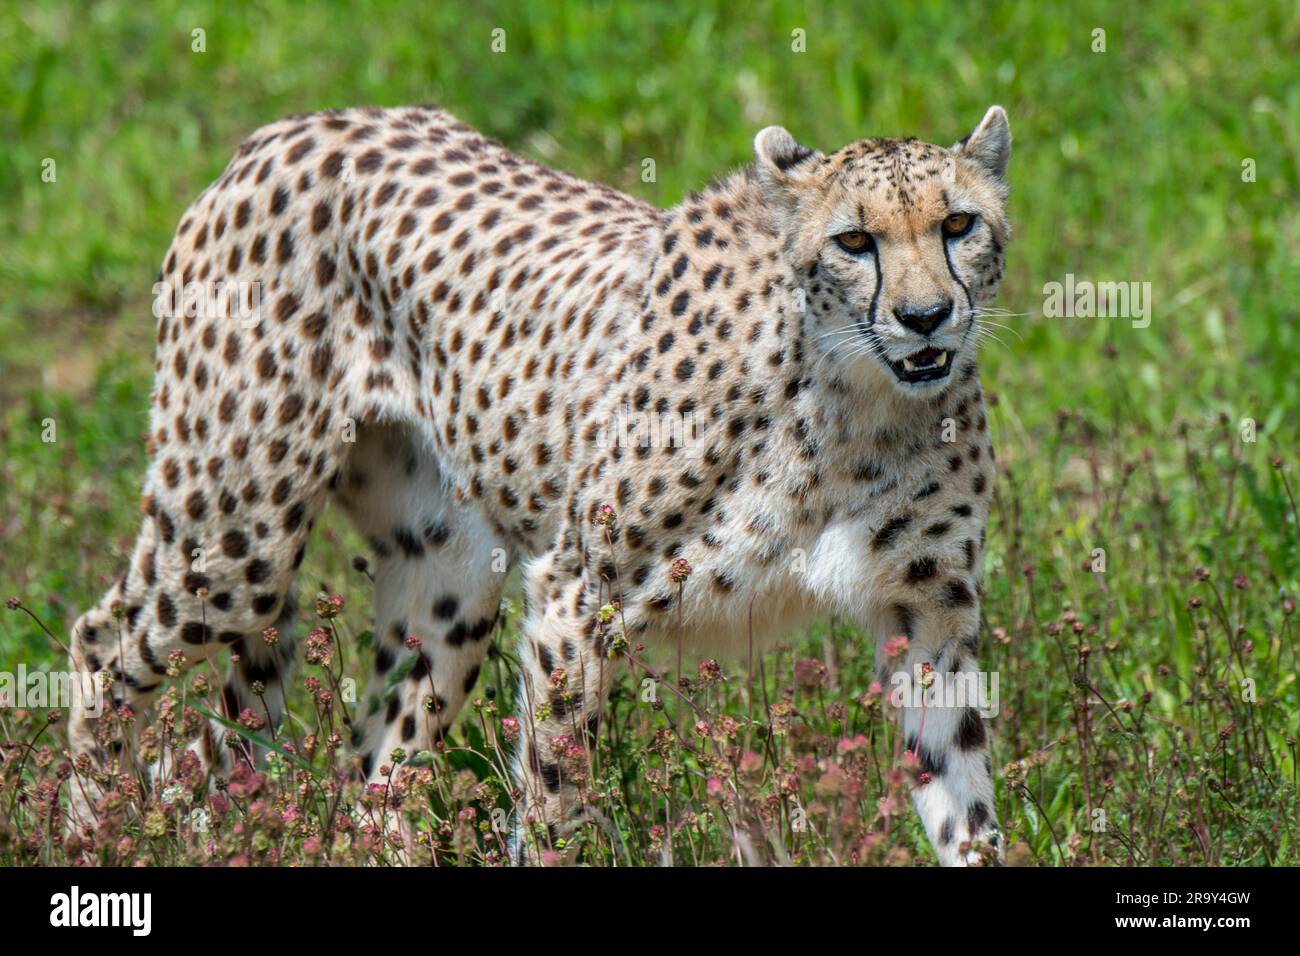 Cheetah (Acinonyx jubatus) caccia nelle praterie, originaria dell'Africa e dell'Asia sud-occidentale Foto Stock